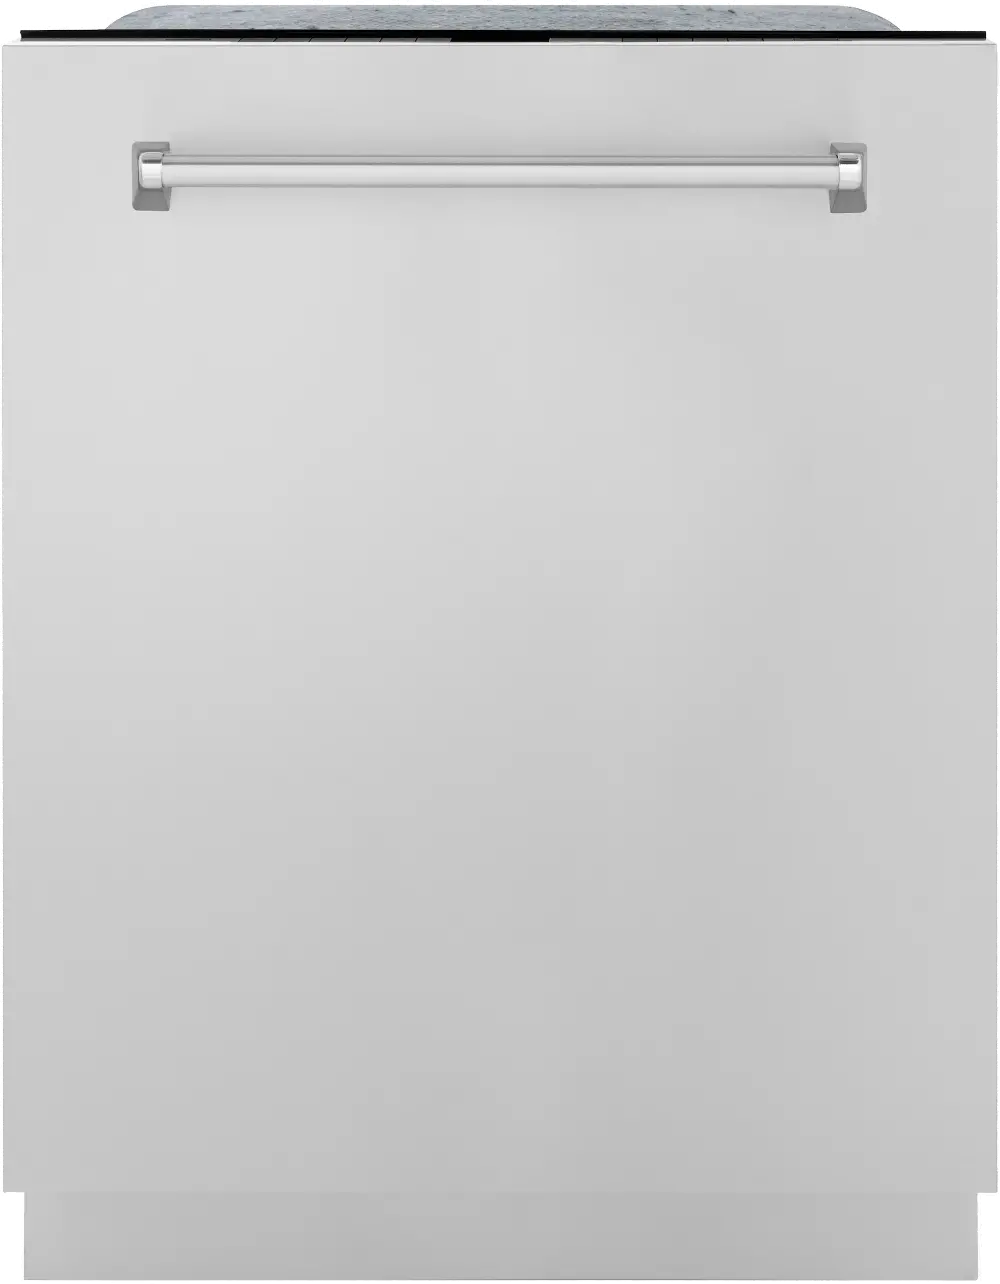 DWMT-304-24 ZLINE Monument Series Top Control Dishwasher - Stainless Steel-1